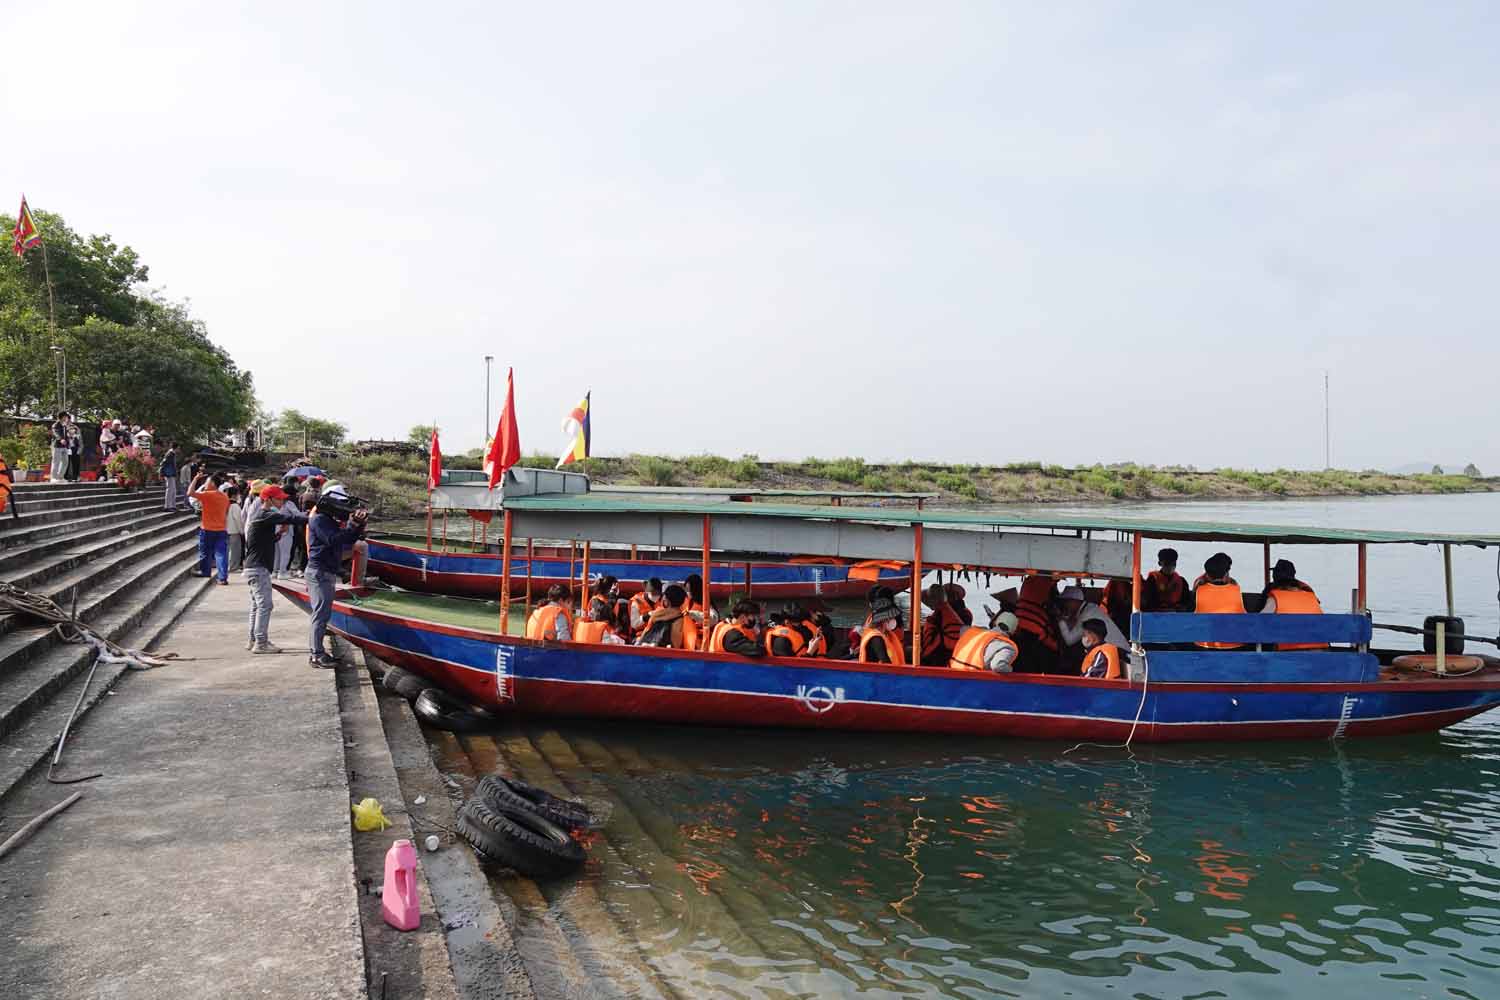 Bến thuyền đưa du khách qua một đoạn đường sông lên chùa Hương Tích. Ảnh: Trần Tuấn.